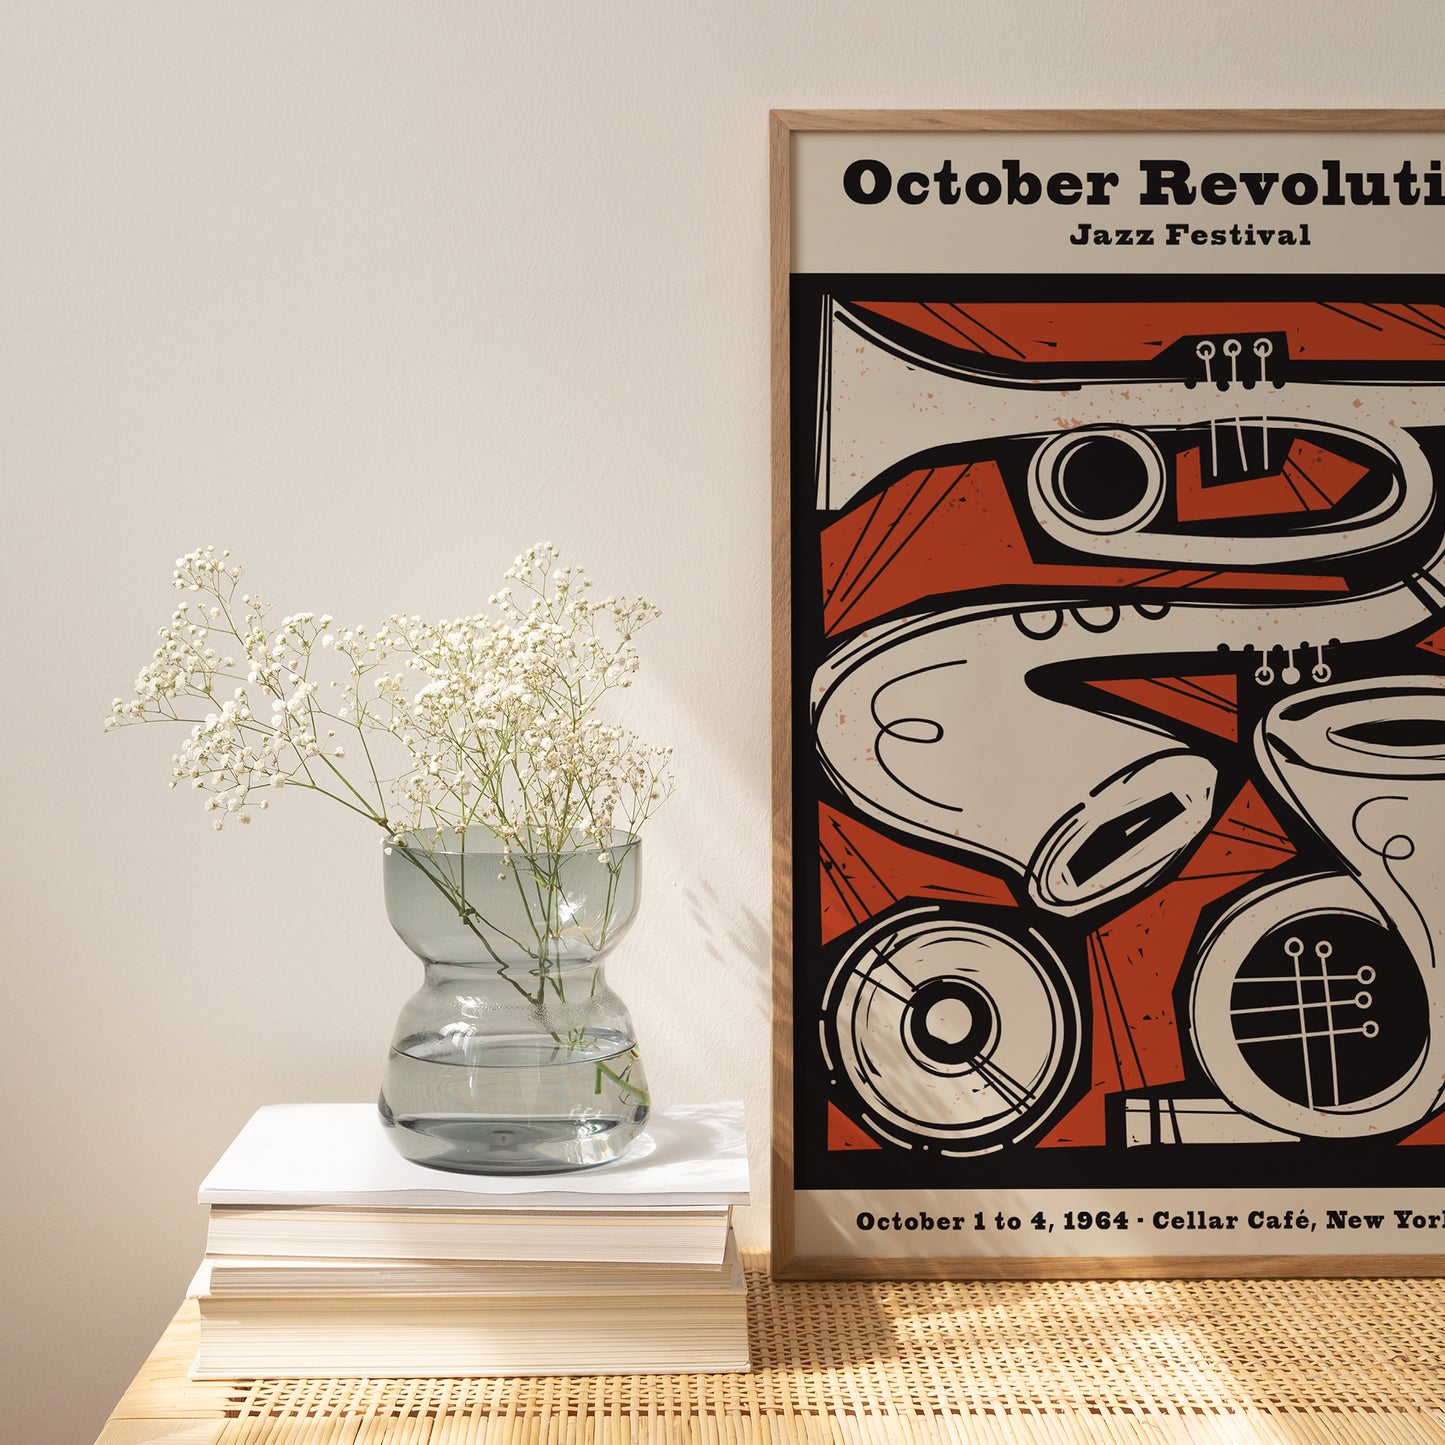 October Revolution Jazz Festival Poster